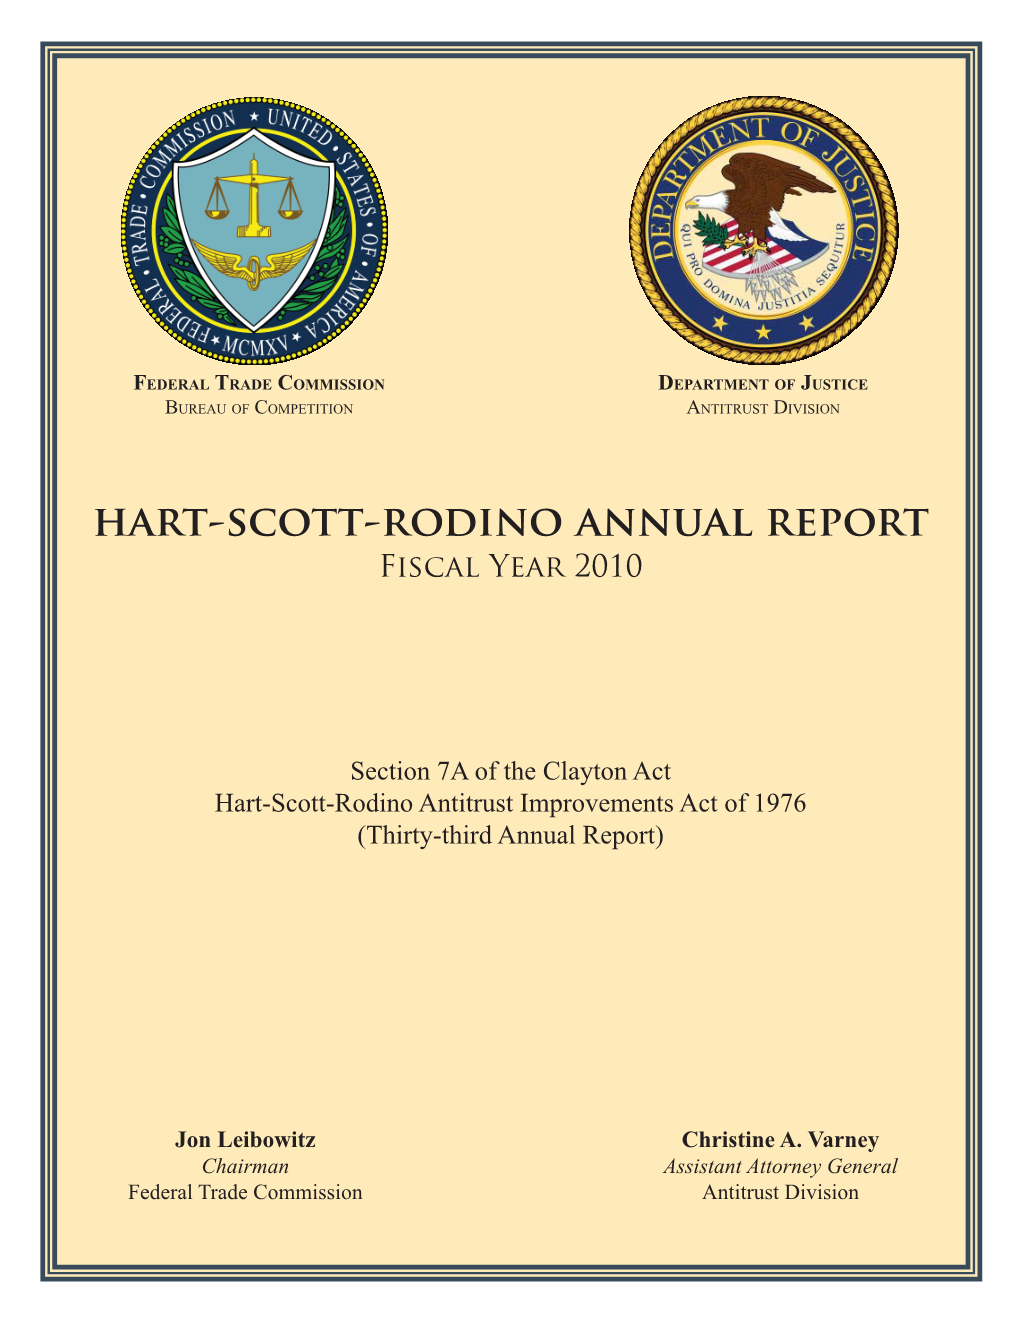 Hart-Scott-Rodino Annual Report Fiscal Year 2010